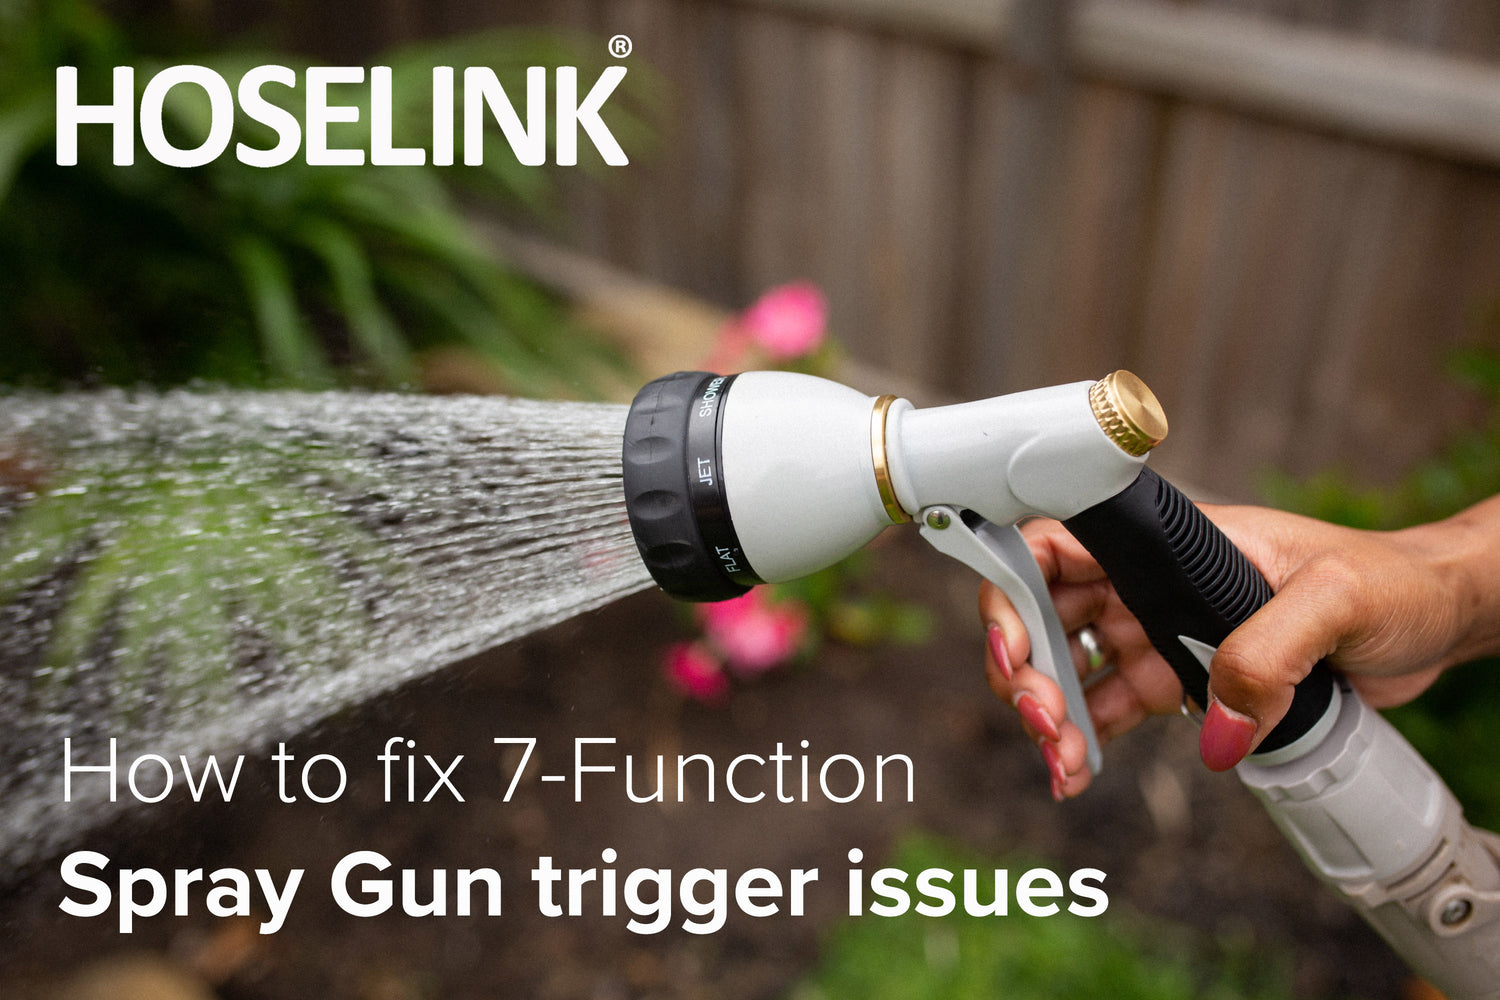 How to fix spray gun trigger problems - Hoselink 7-Function Spray Gun